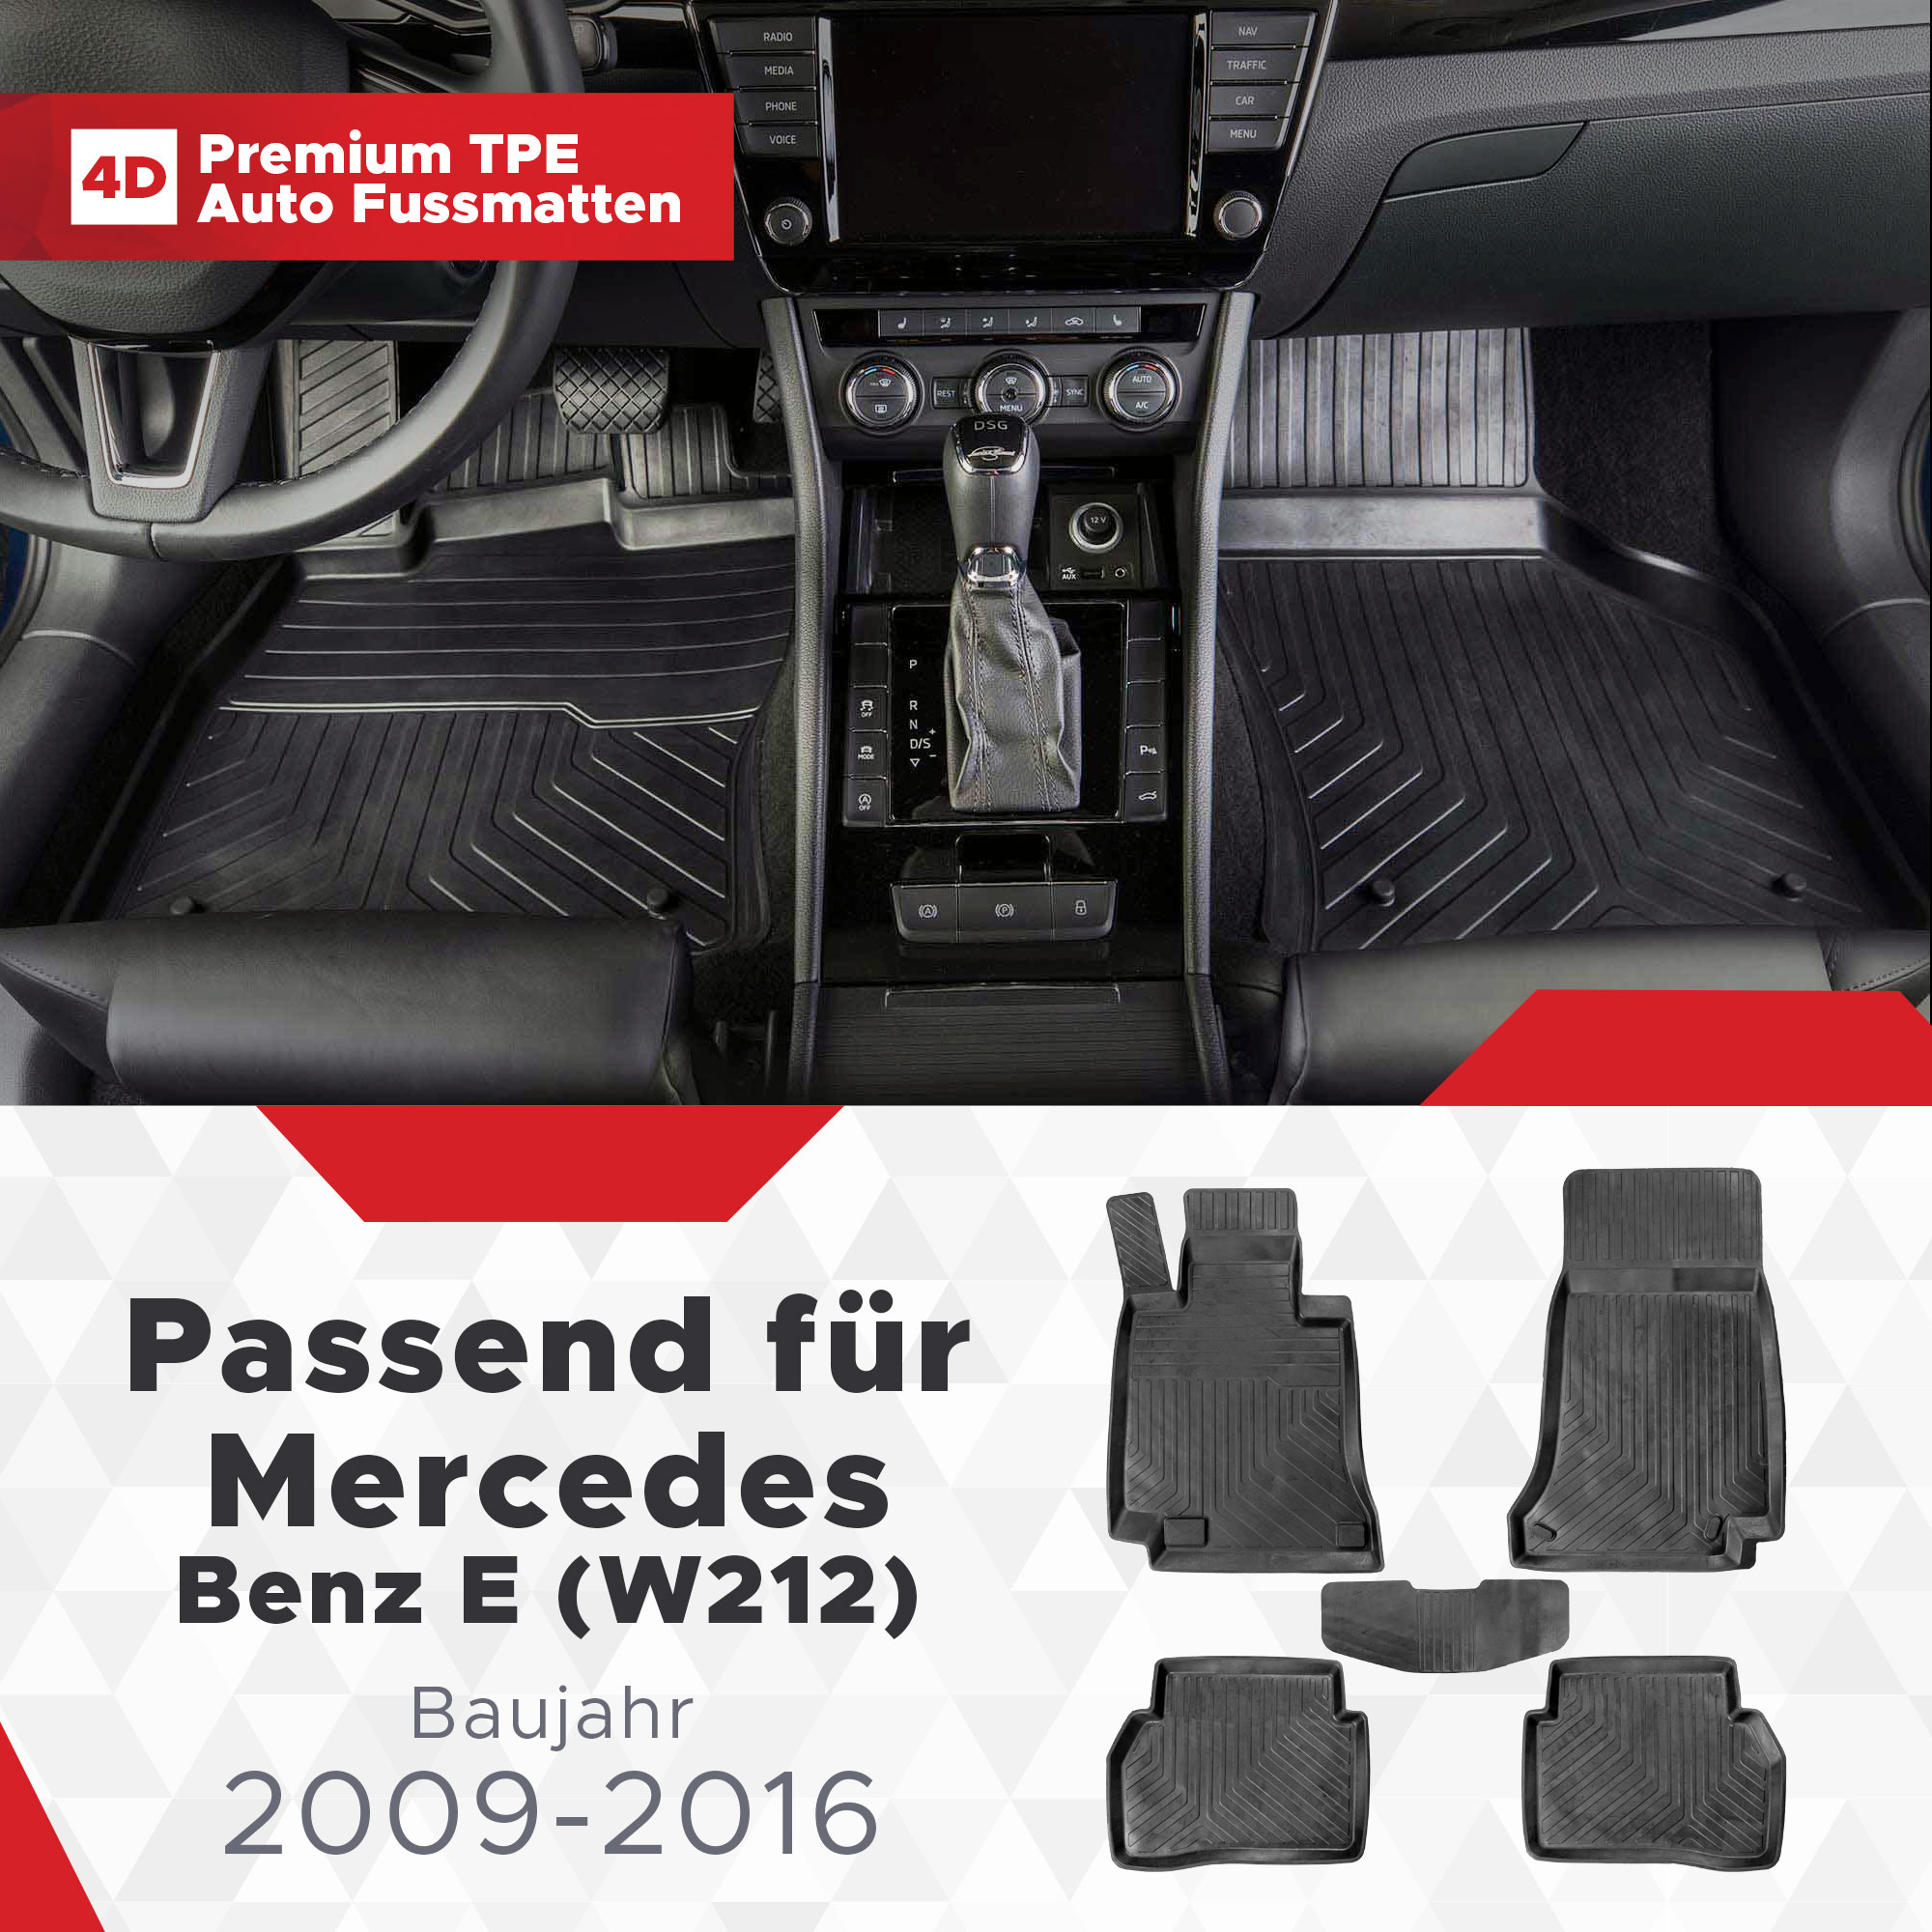 5D Premium Auto Fussmatten für Mercedes E- Klasse 2009-2016